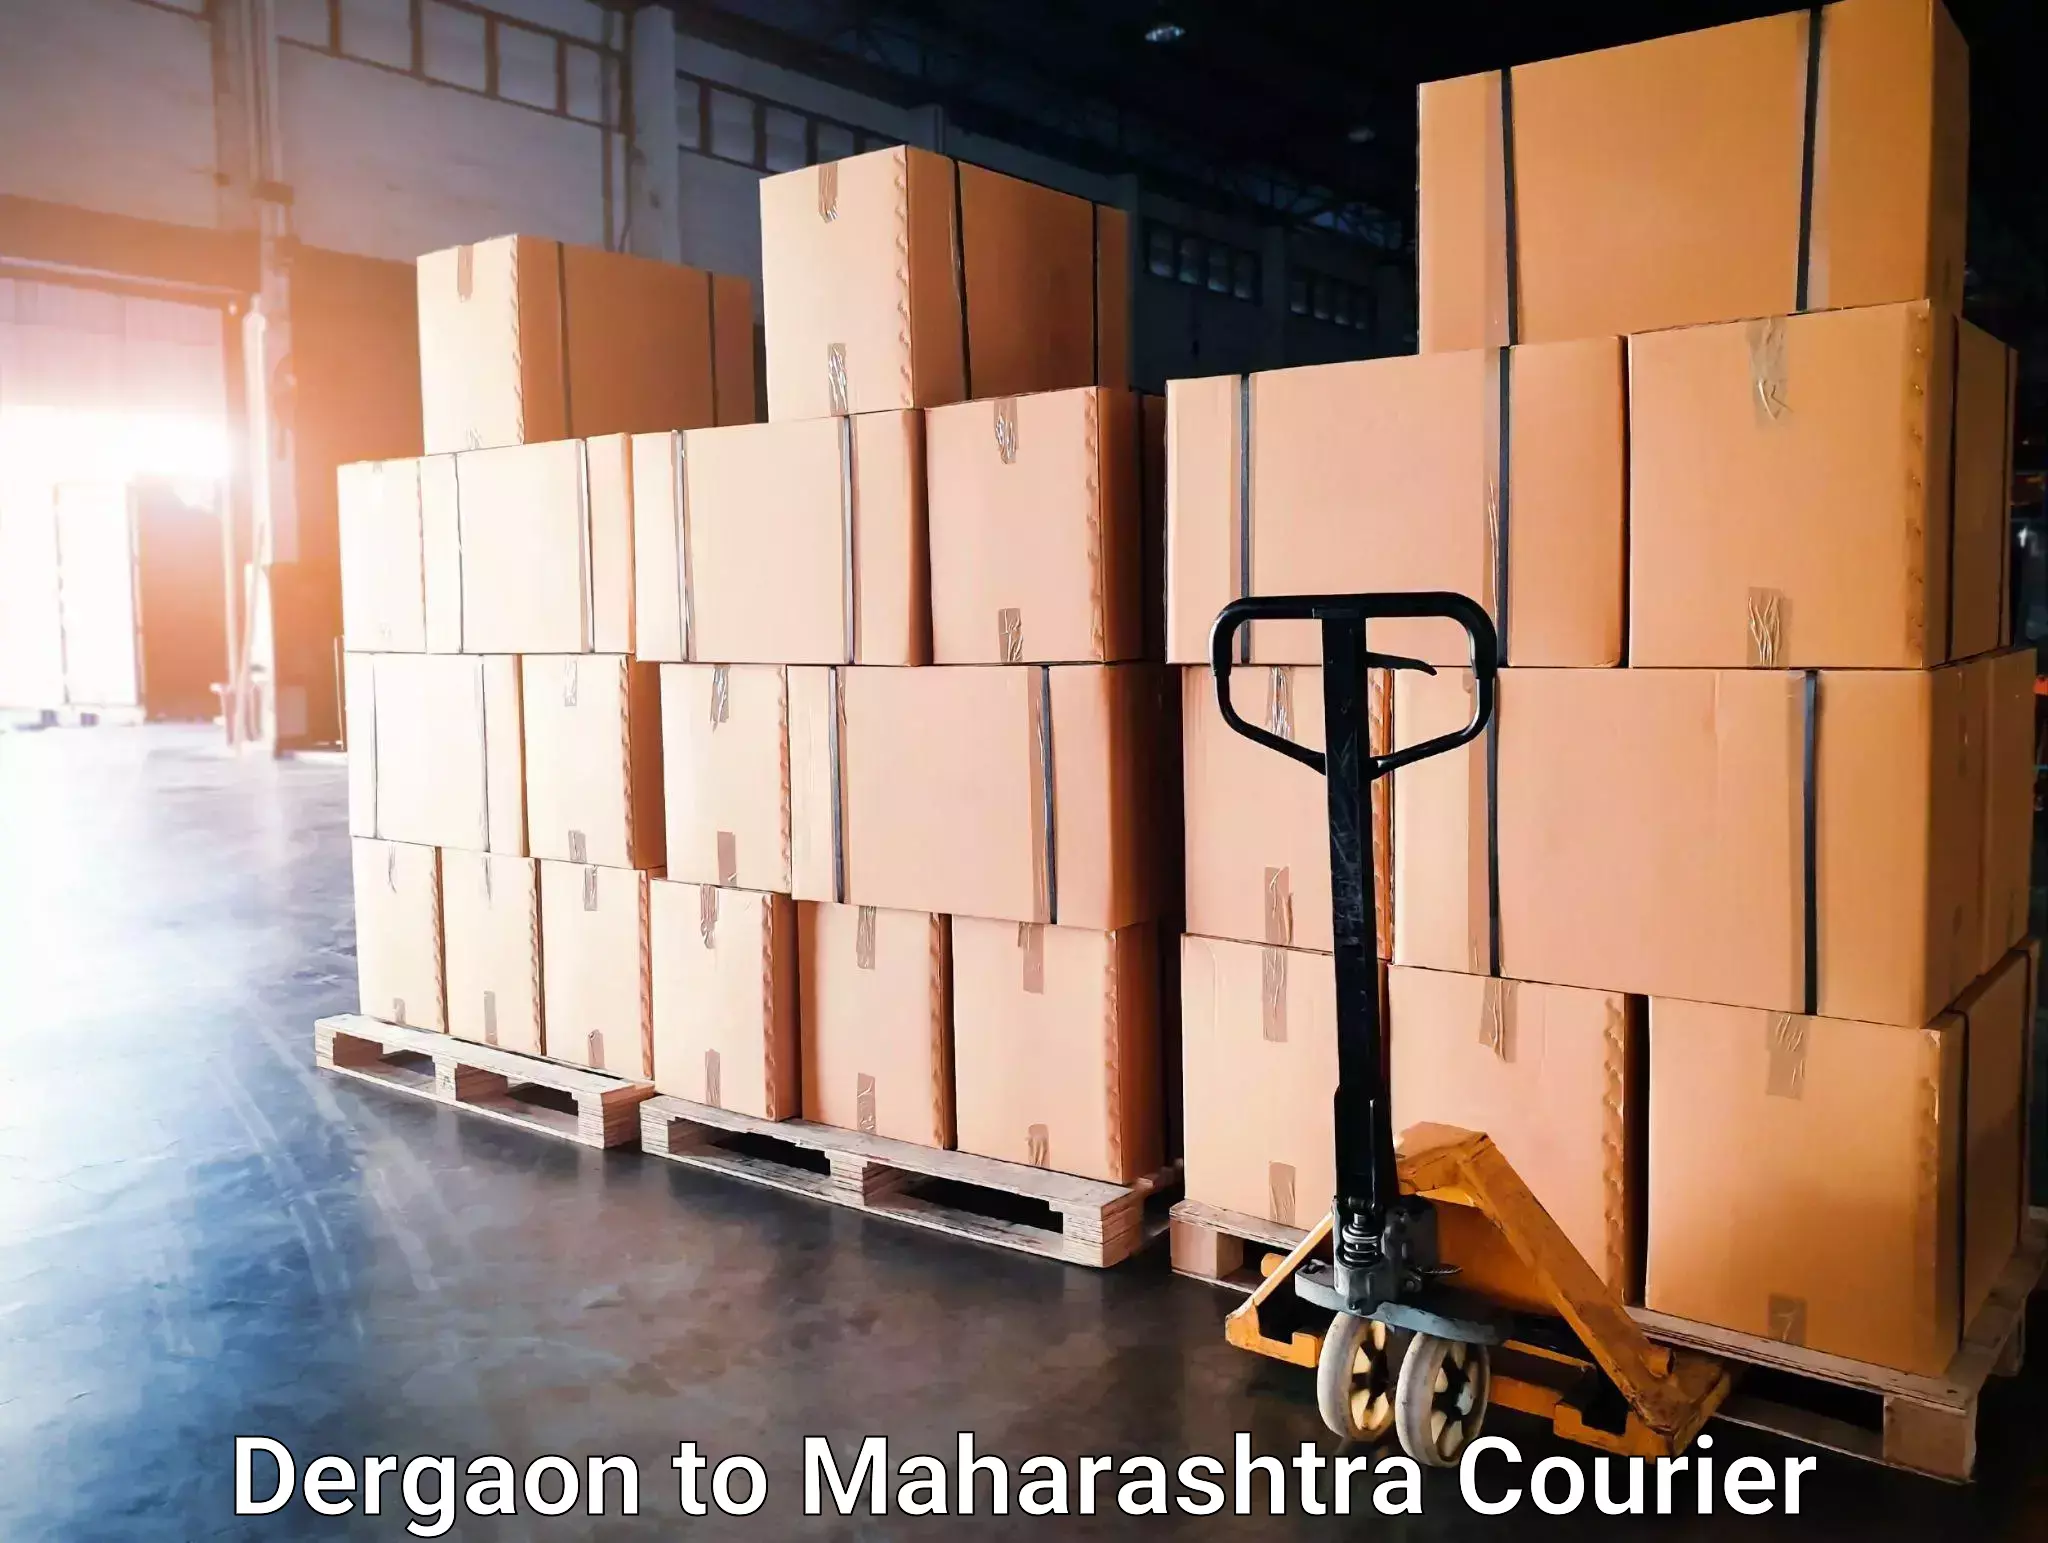 Next-generation courier services Dergaon to Walchandnagar